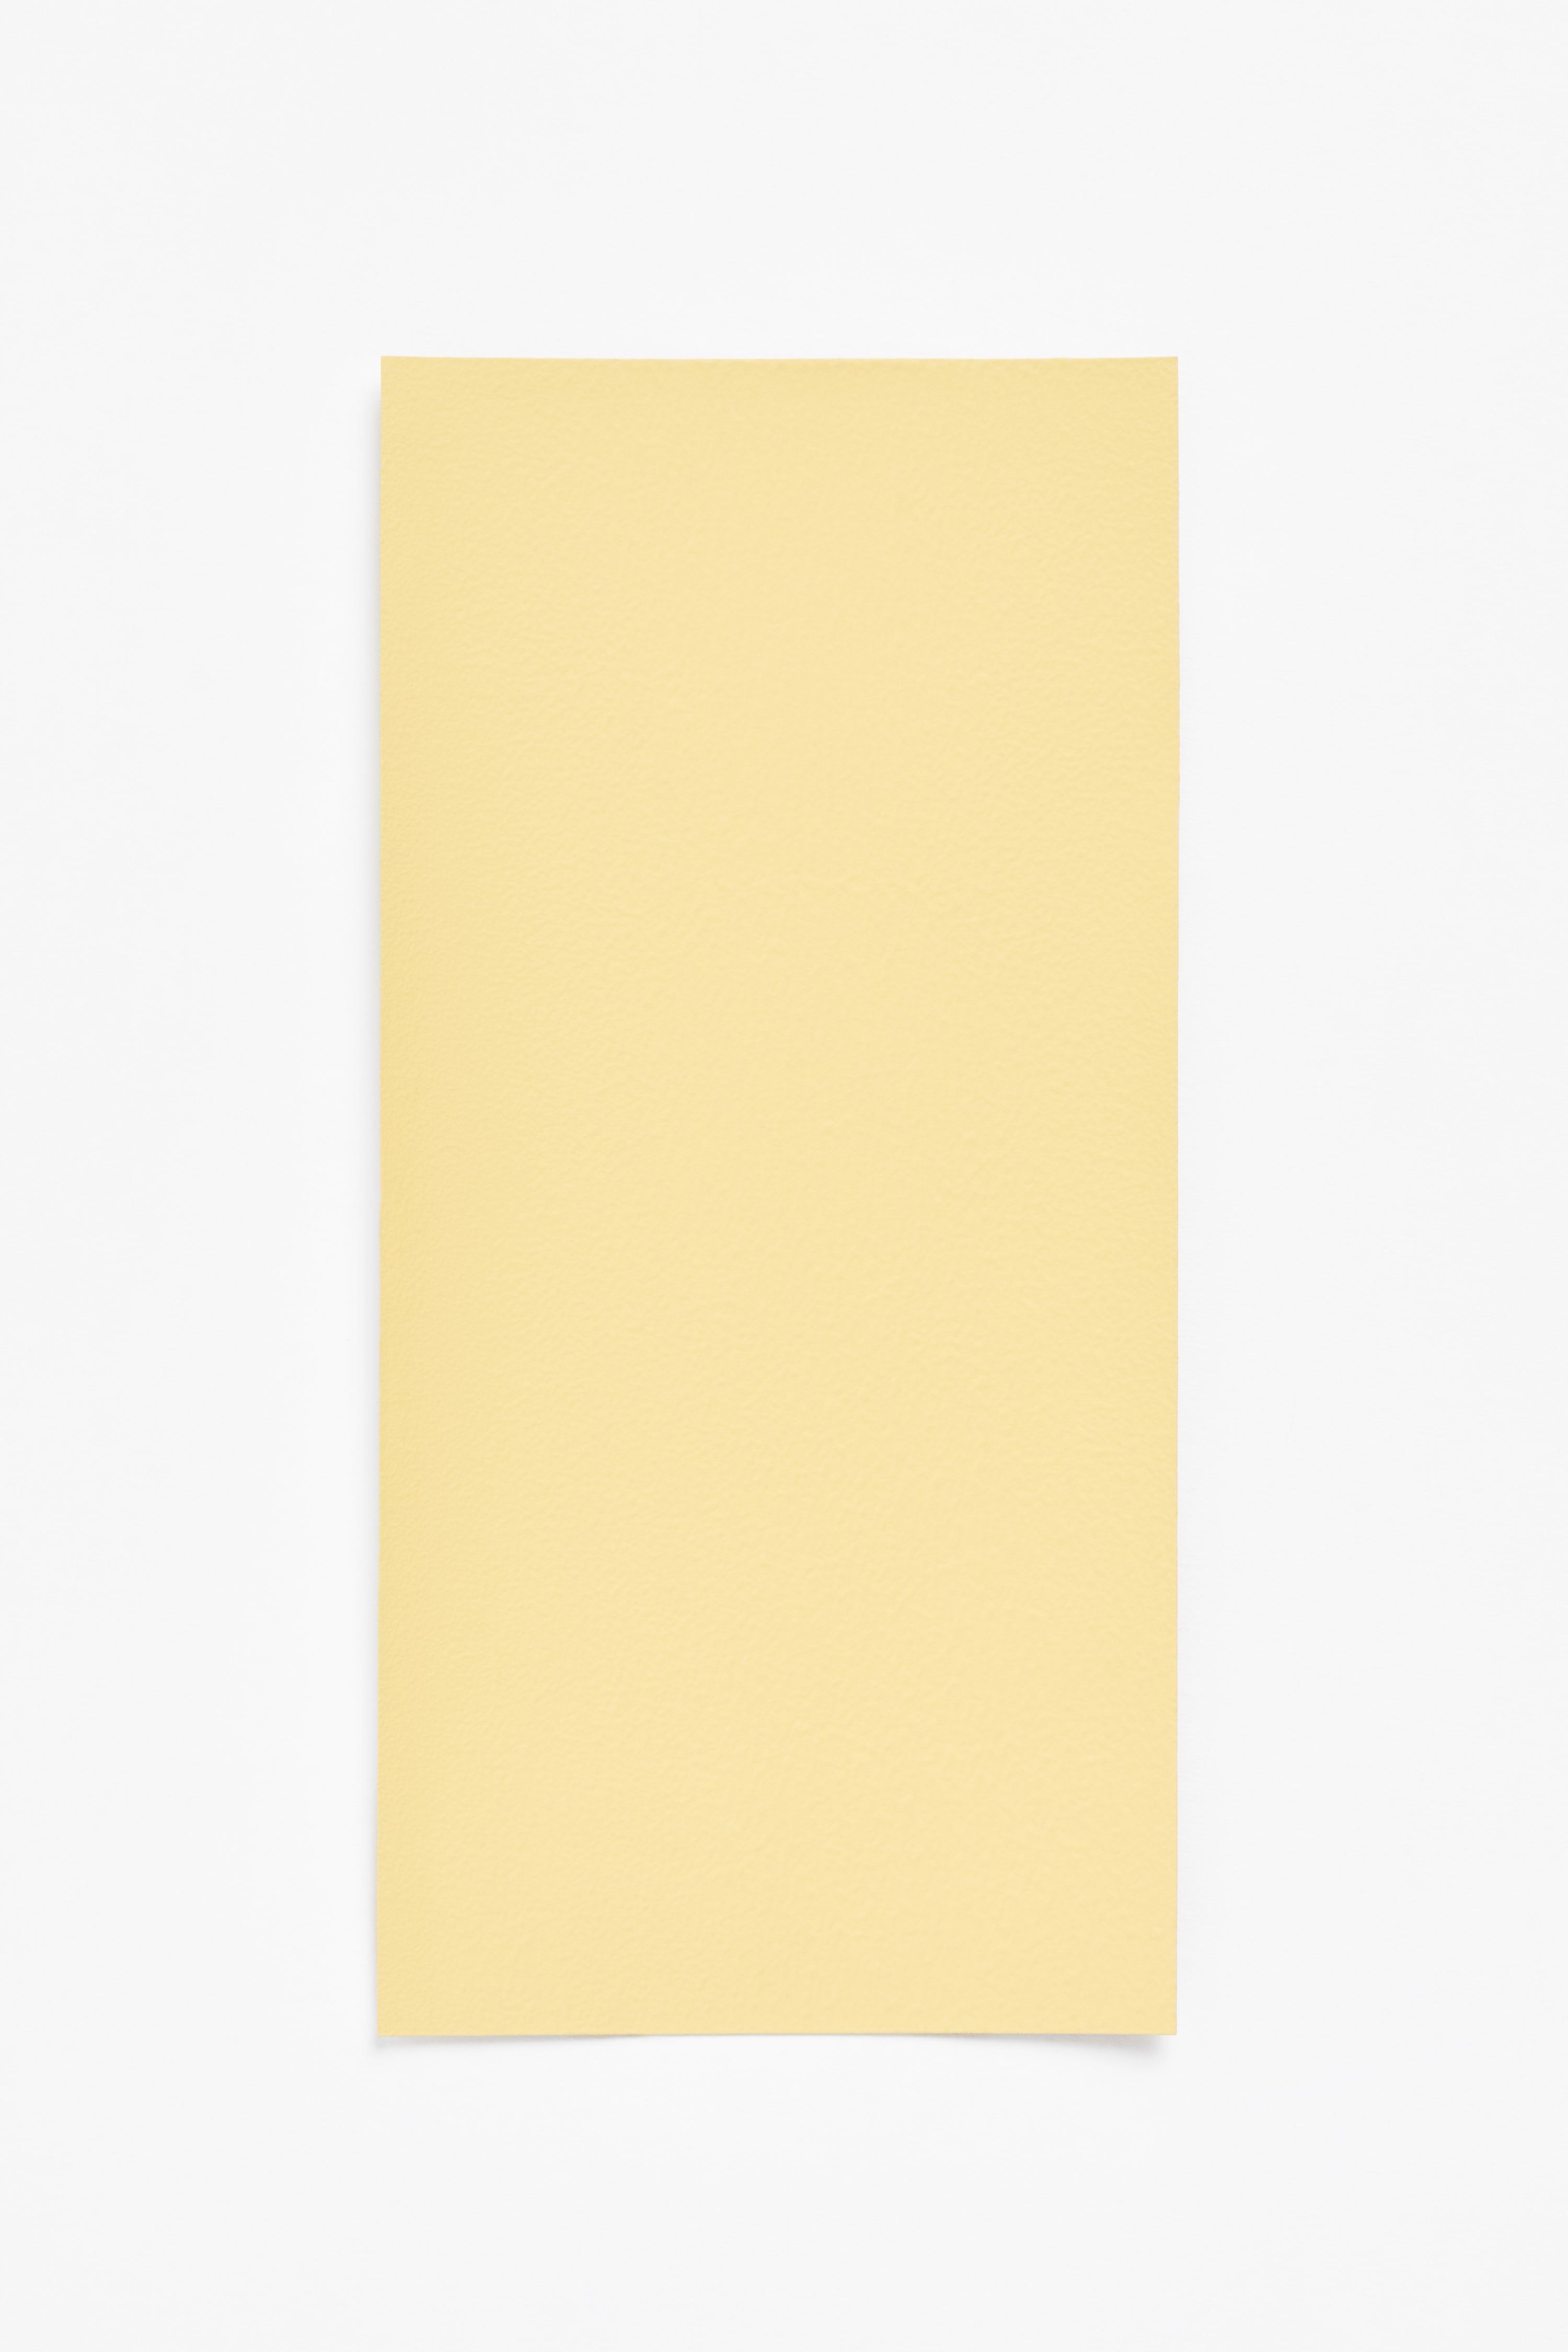 Lemon Peel — a paint colour developed by Halleroed for Blēo